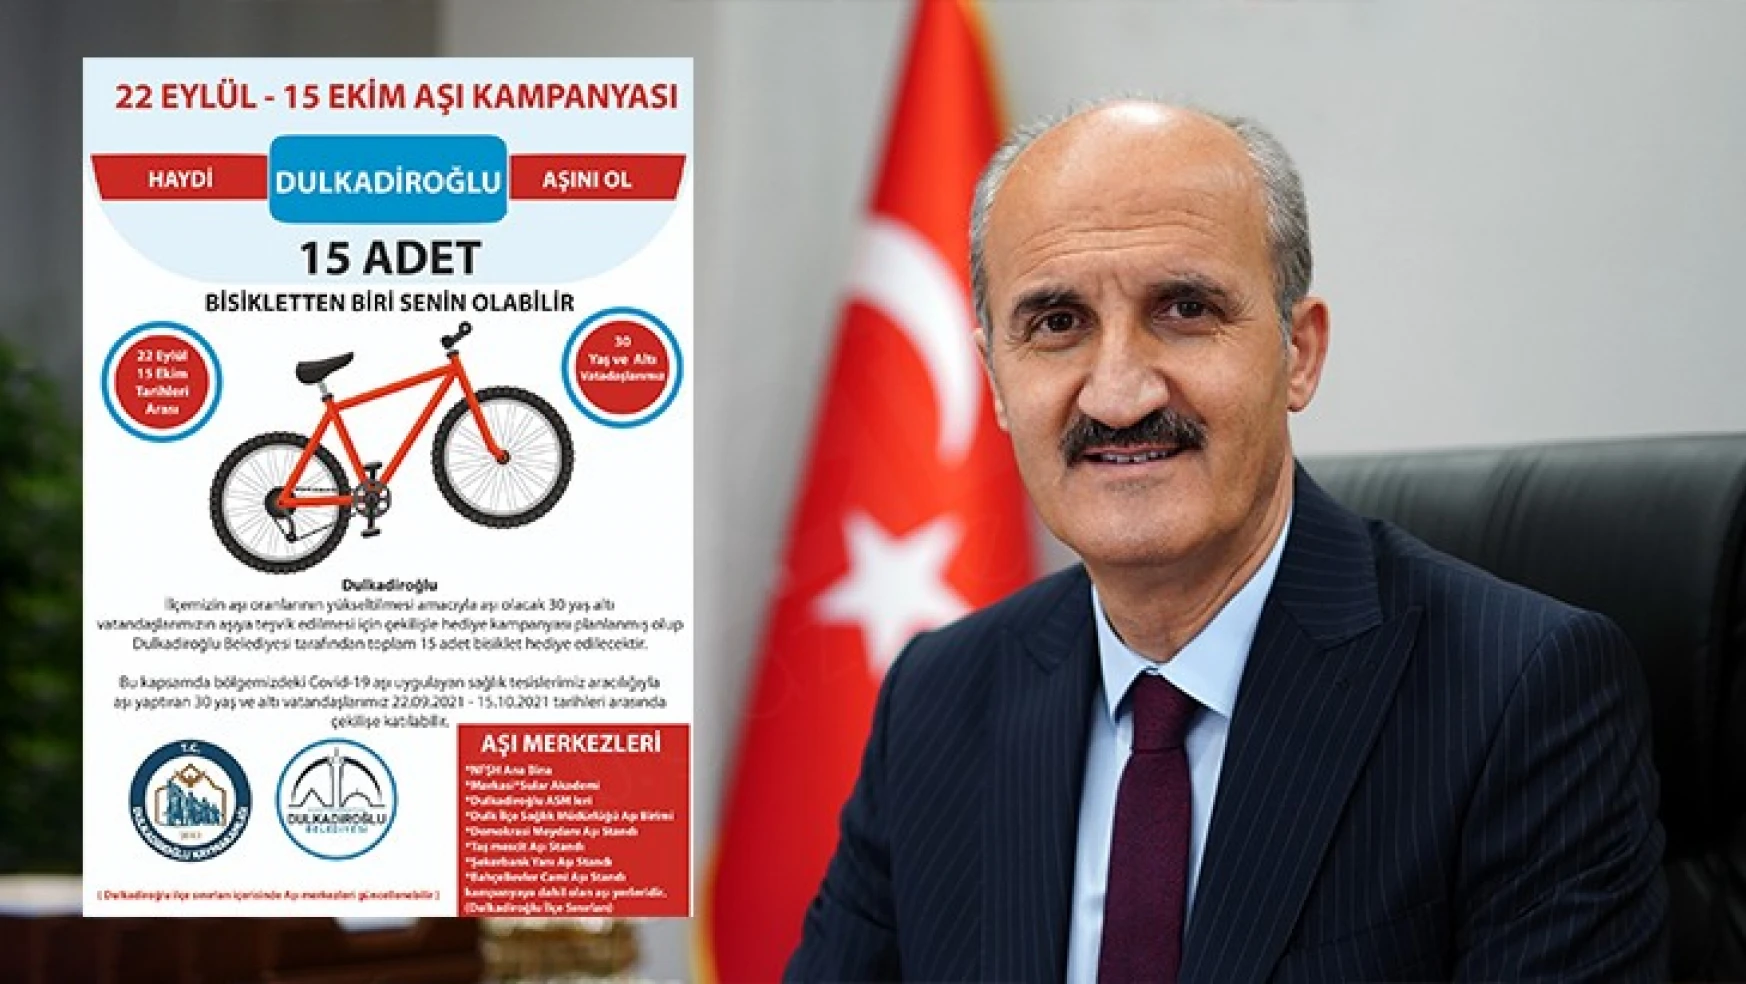 Dulkadiroğlu'ndan aşı kampanyası: 15 kişiye bisiklet hediye